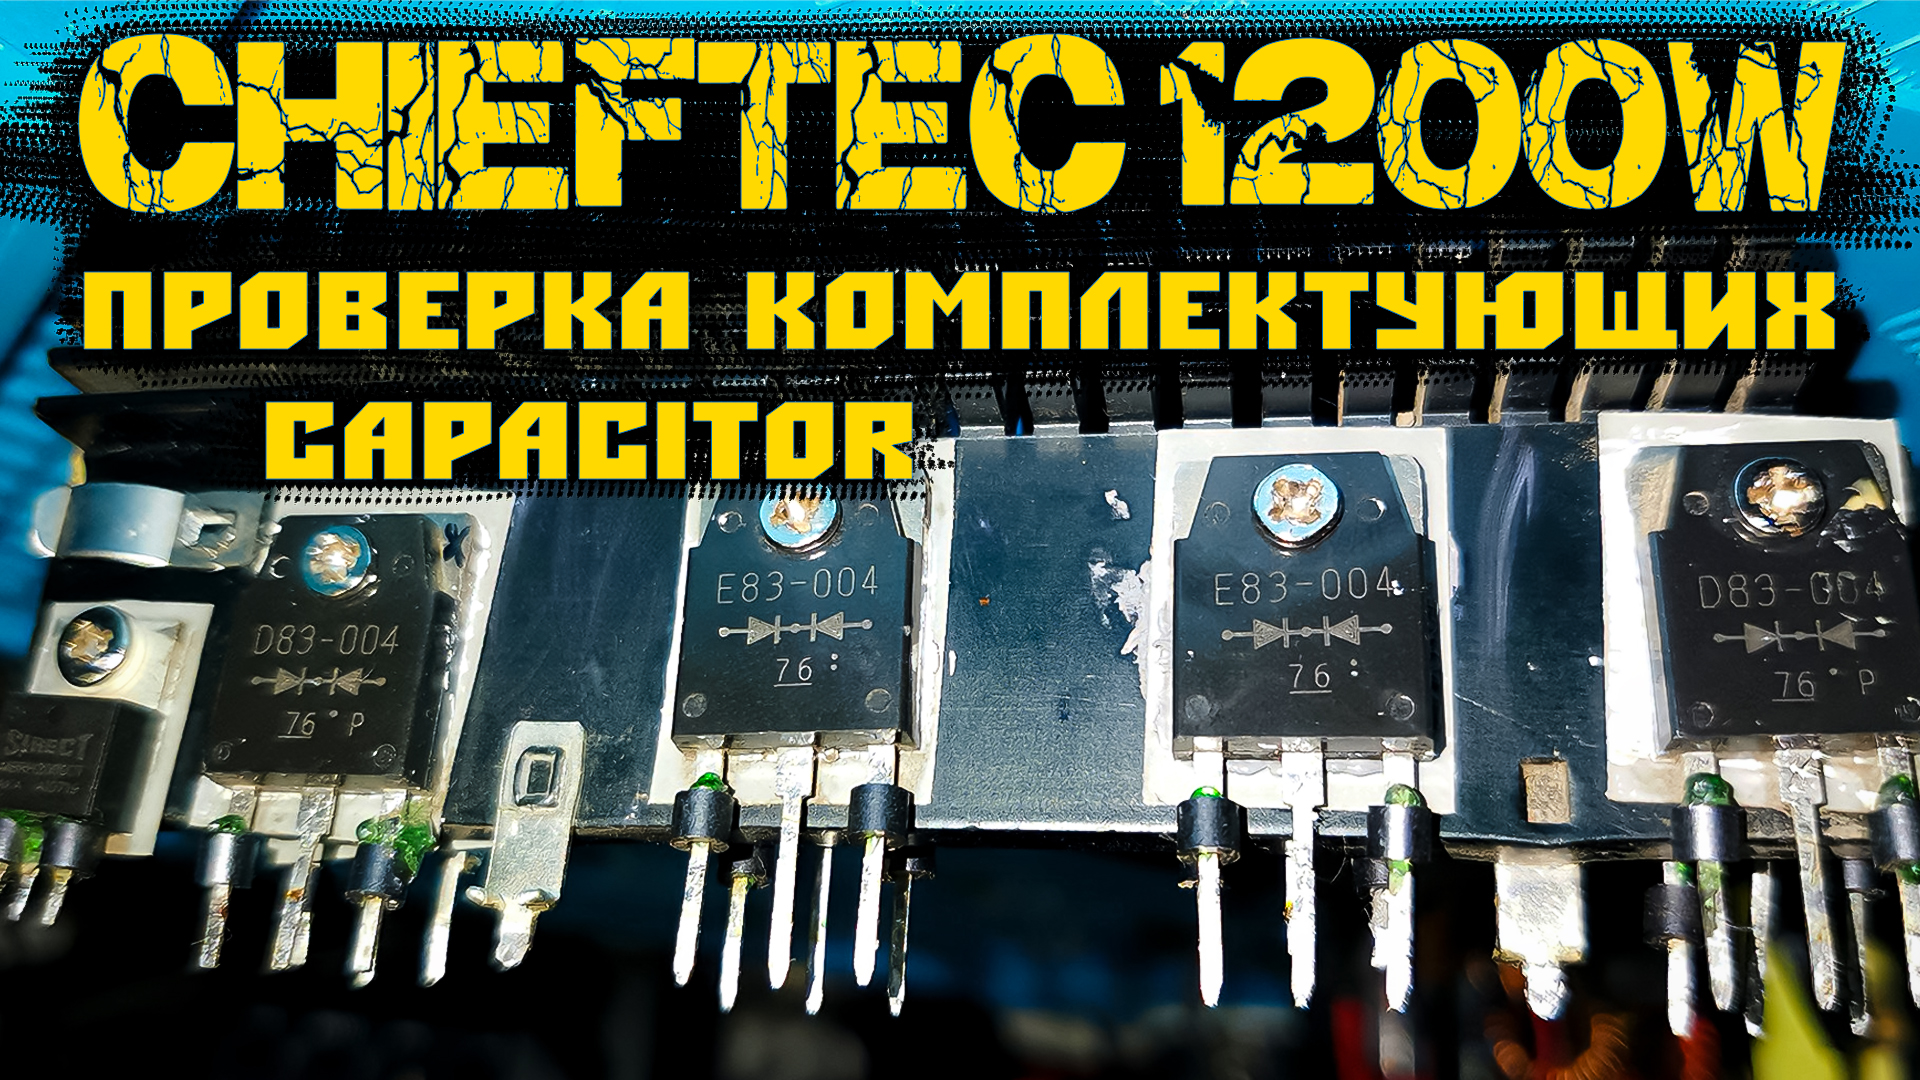 Live RMBT БП от ПК CHIEFTEC CFT-1200G-DF Проверка комплектующих Capacitor Часть2